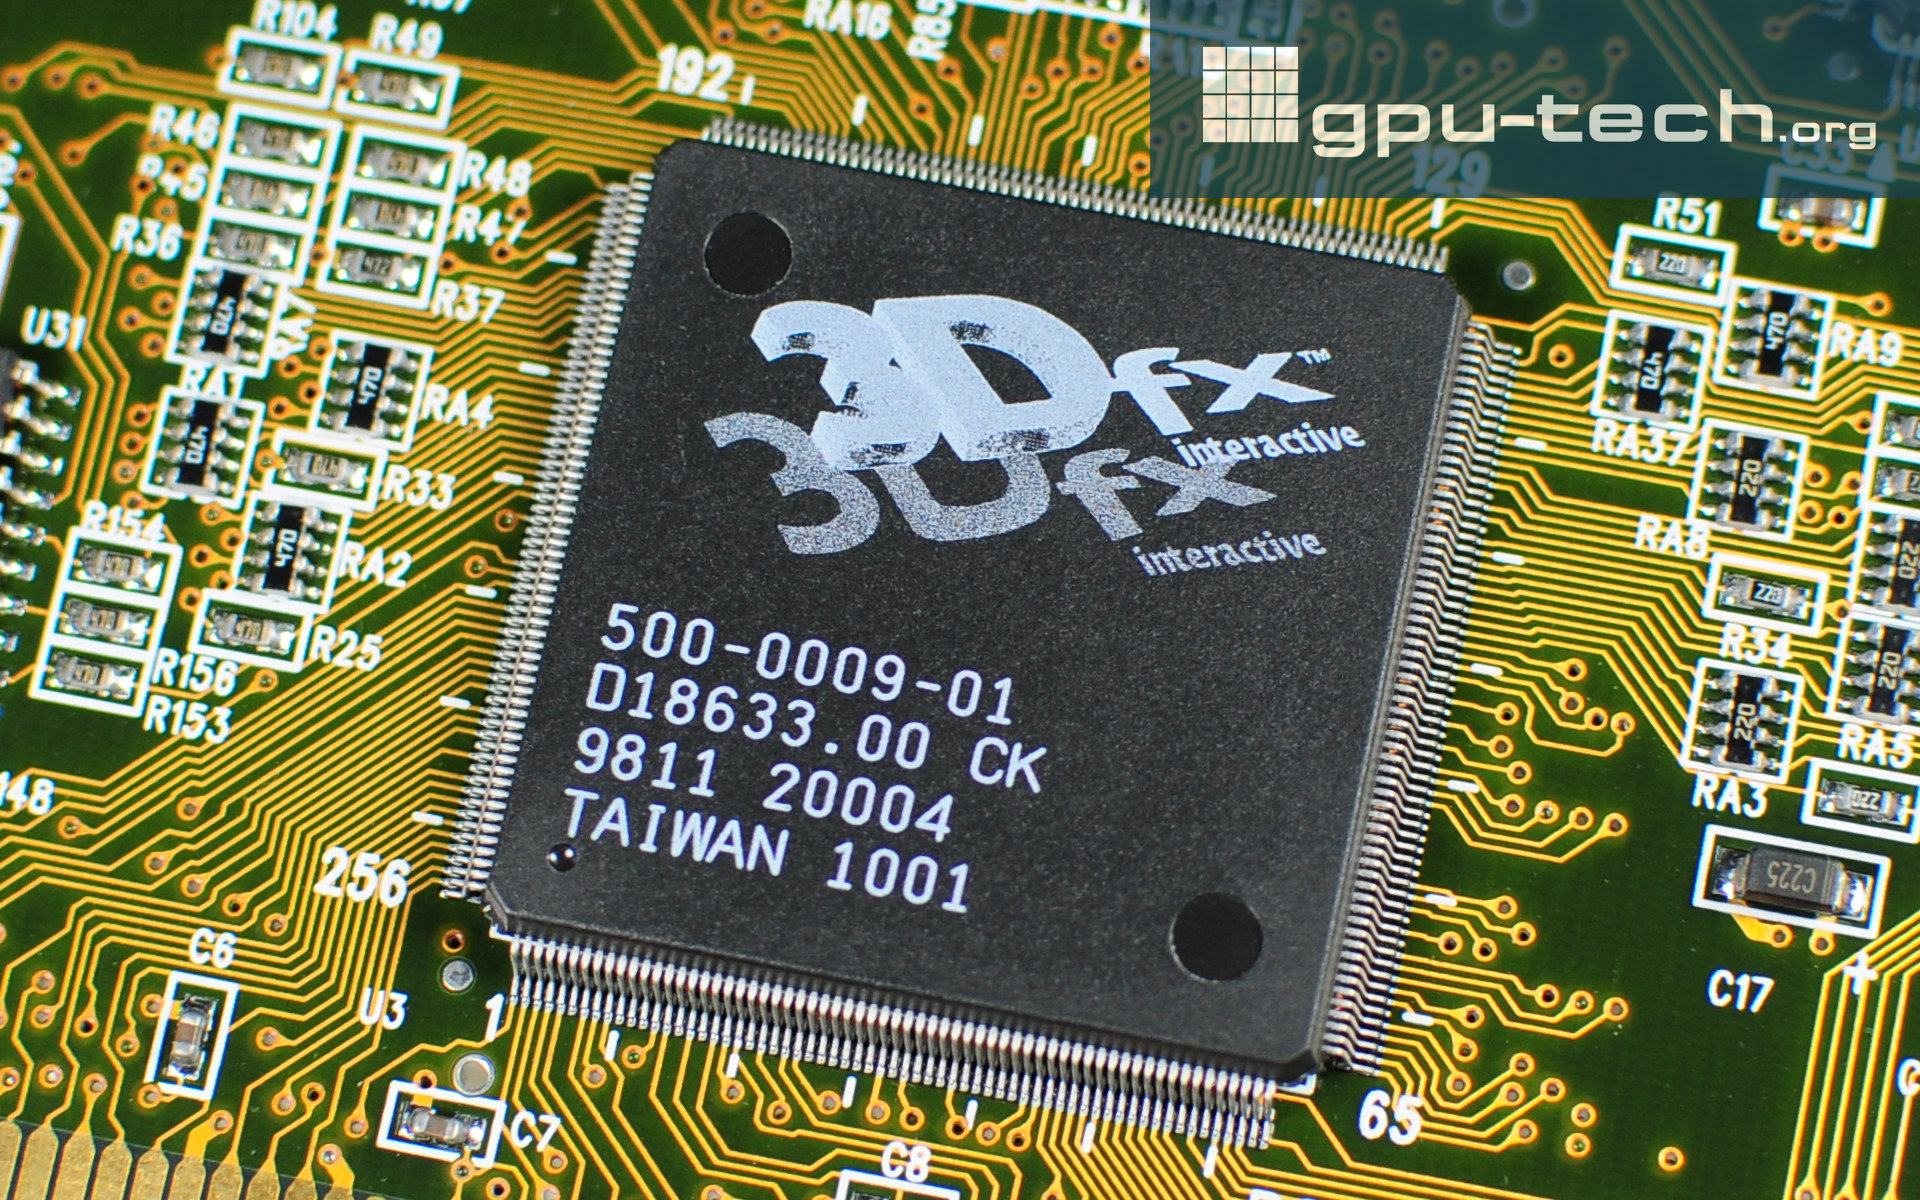 3dfx Voodoo 2: SST-96 Framebuffer Interface